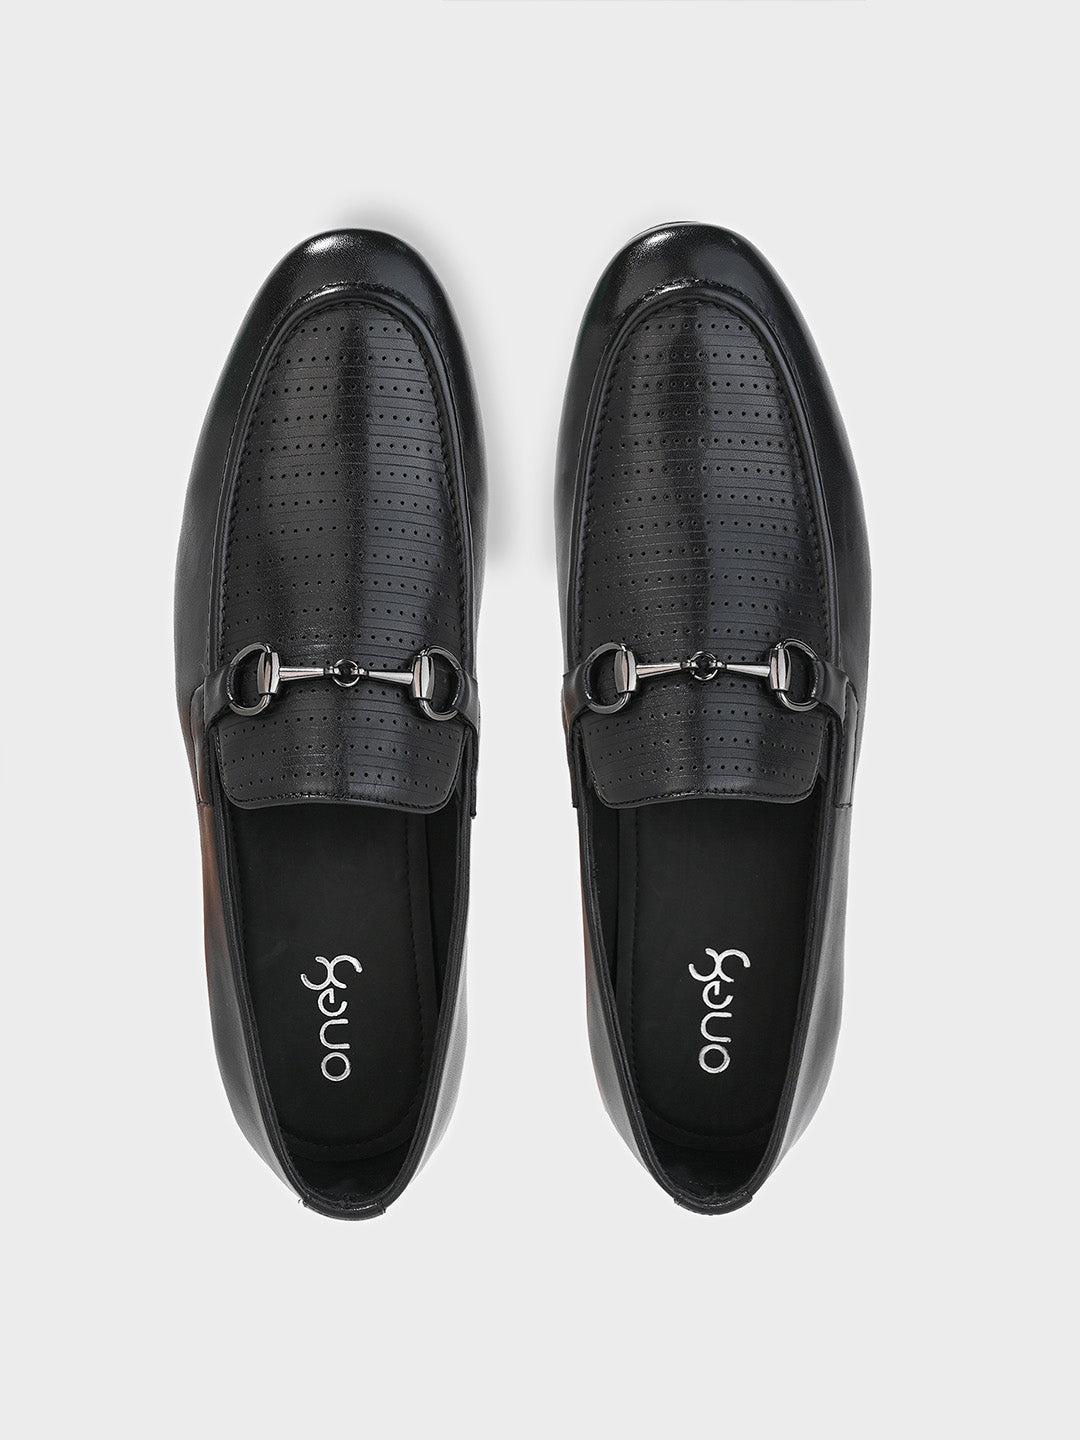 Black Leather Men's Loafer Slip-On Shoes